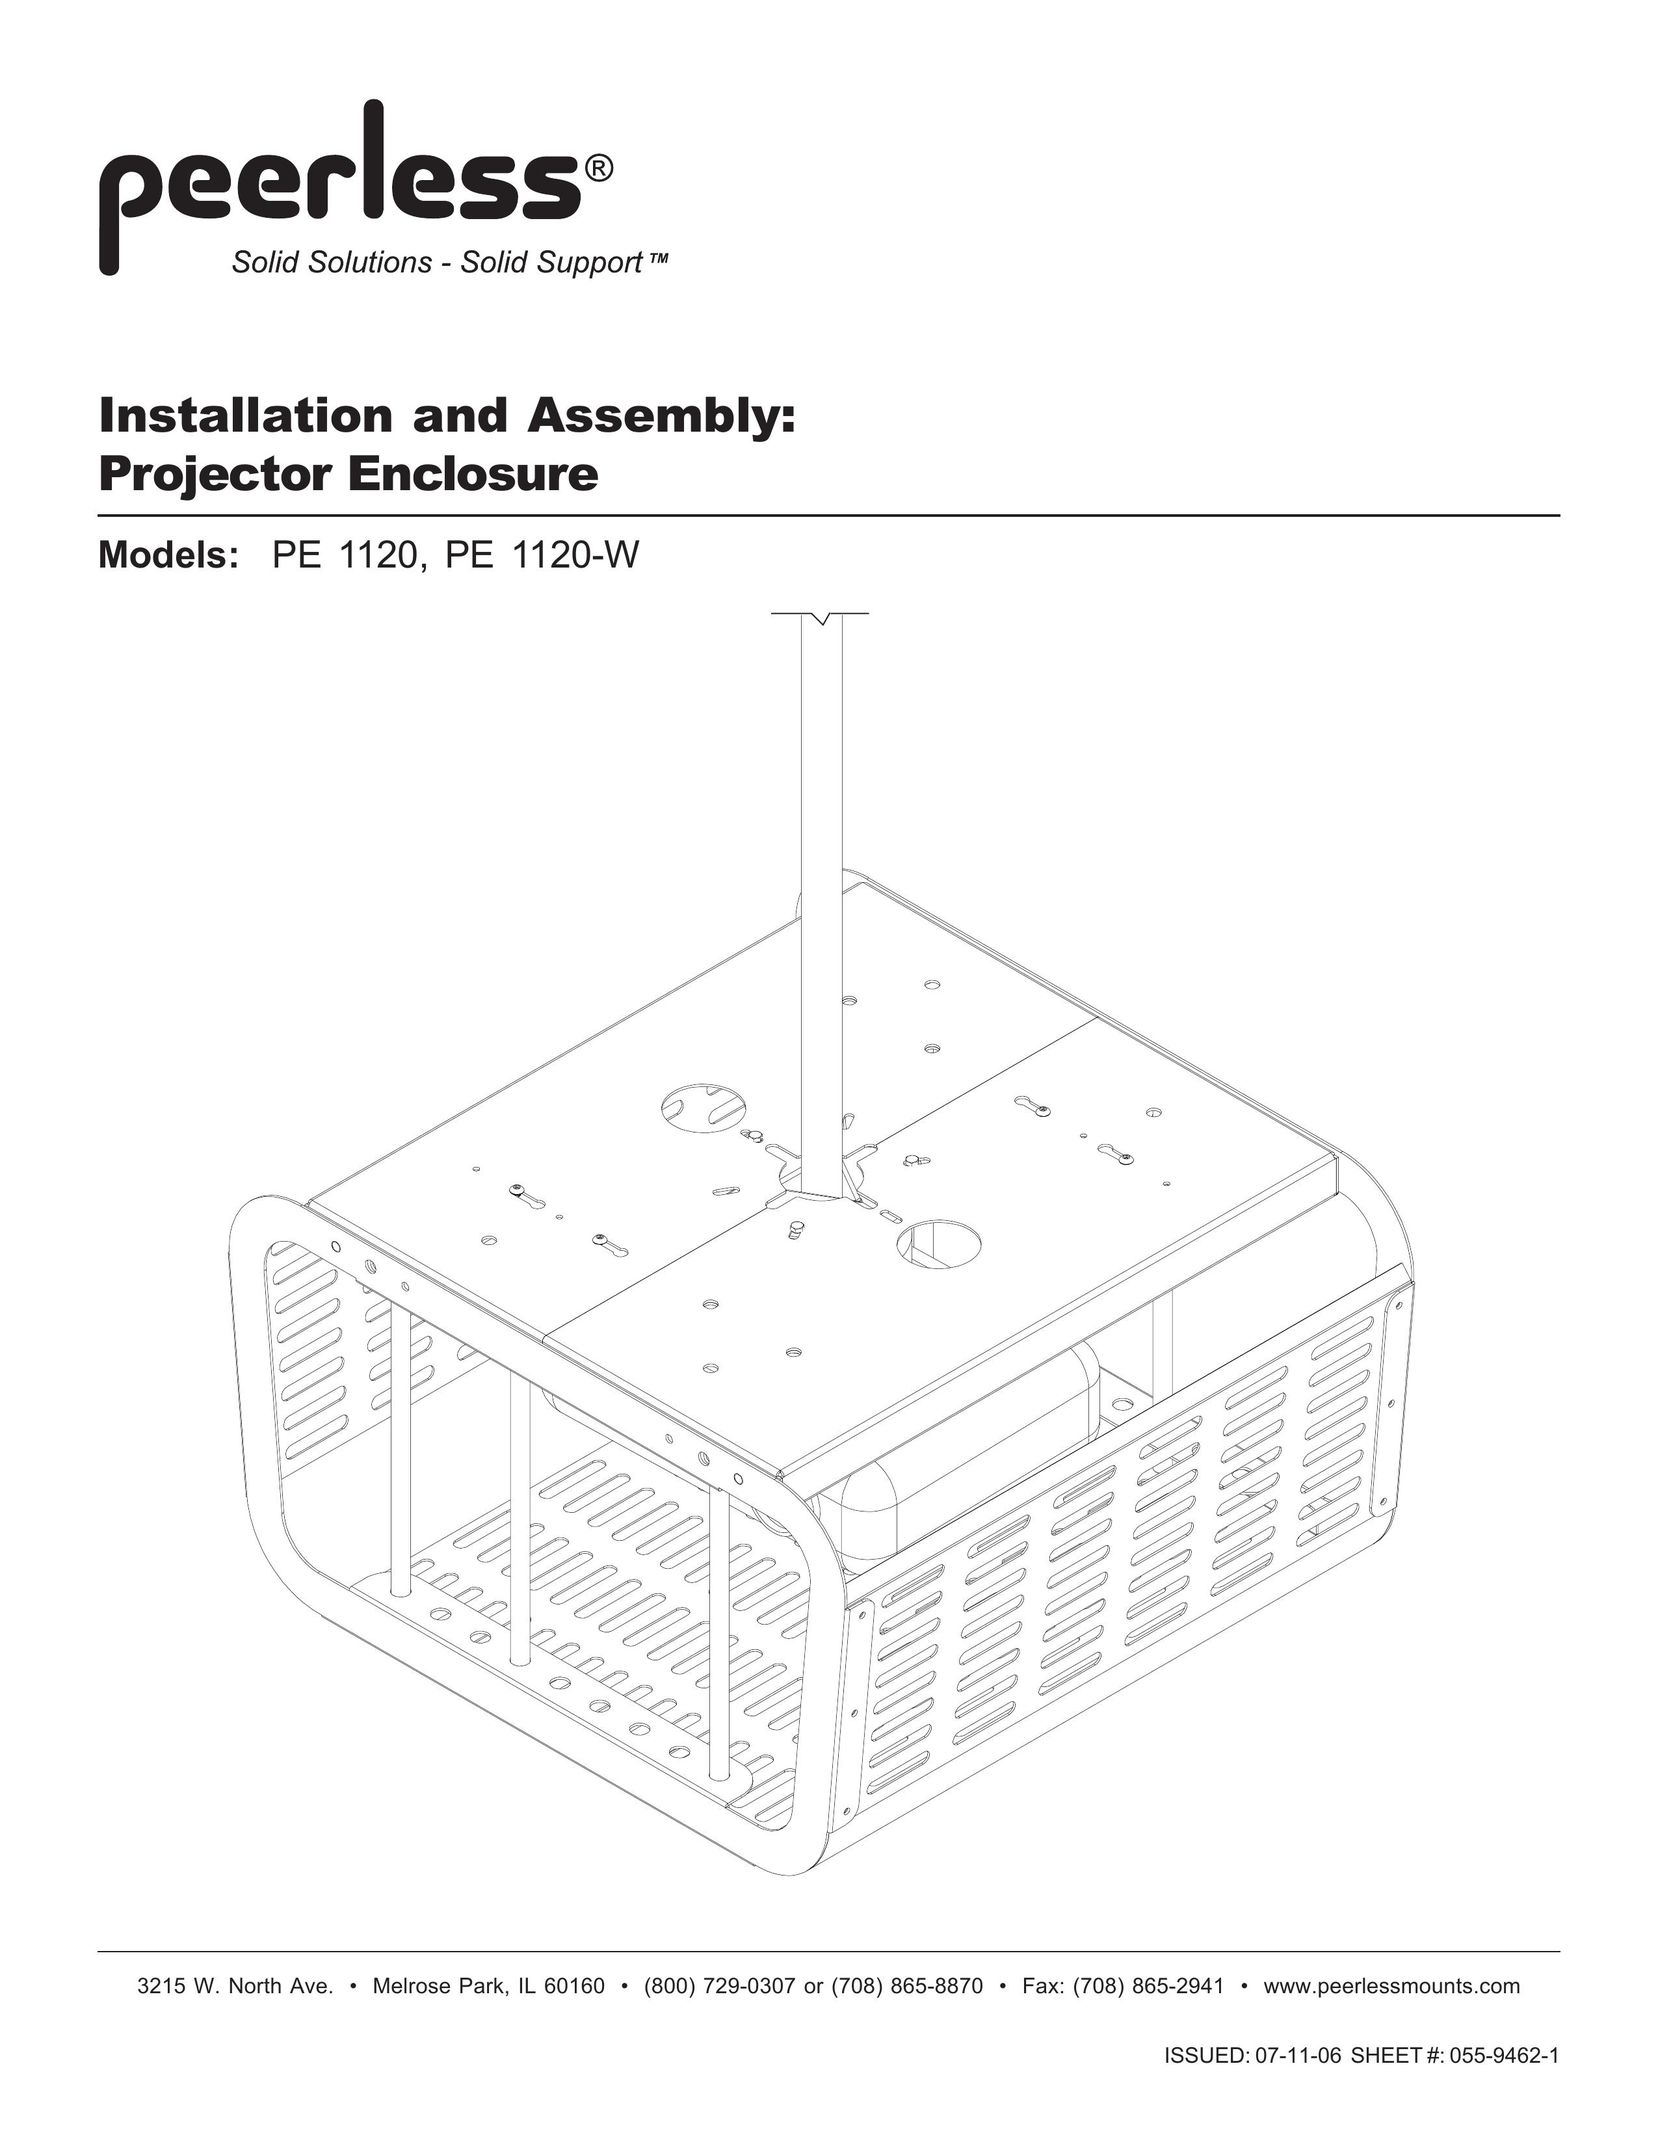 Peerless Industries PE 1120 Projector Accessories User Manual